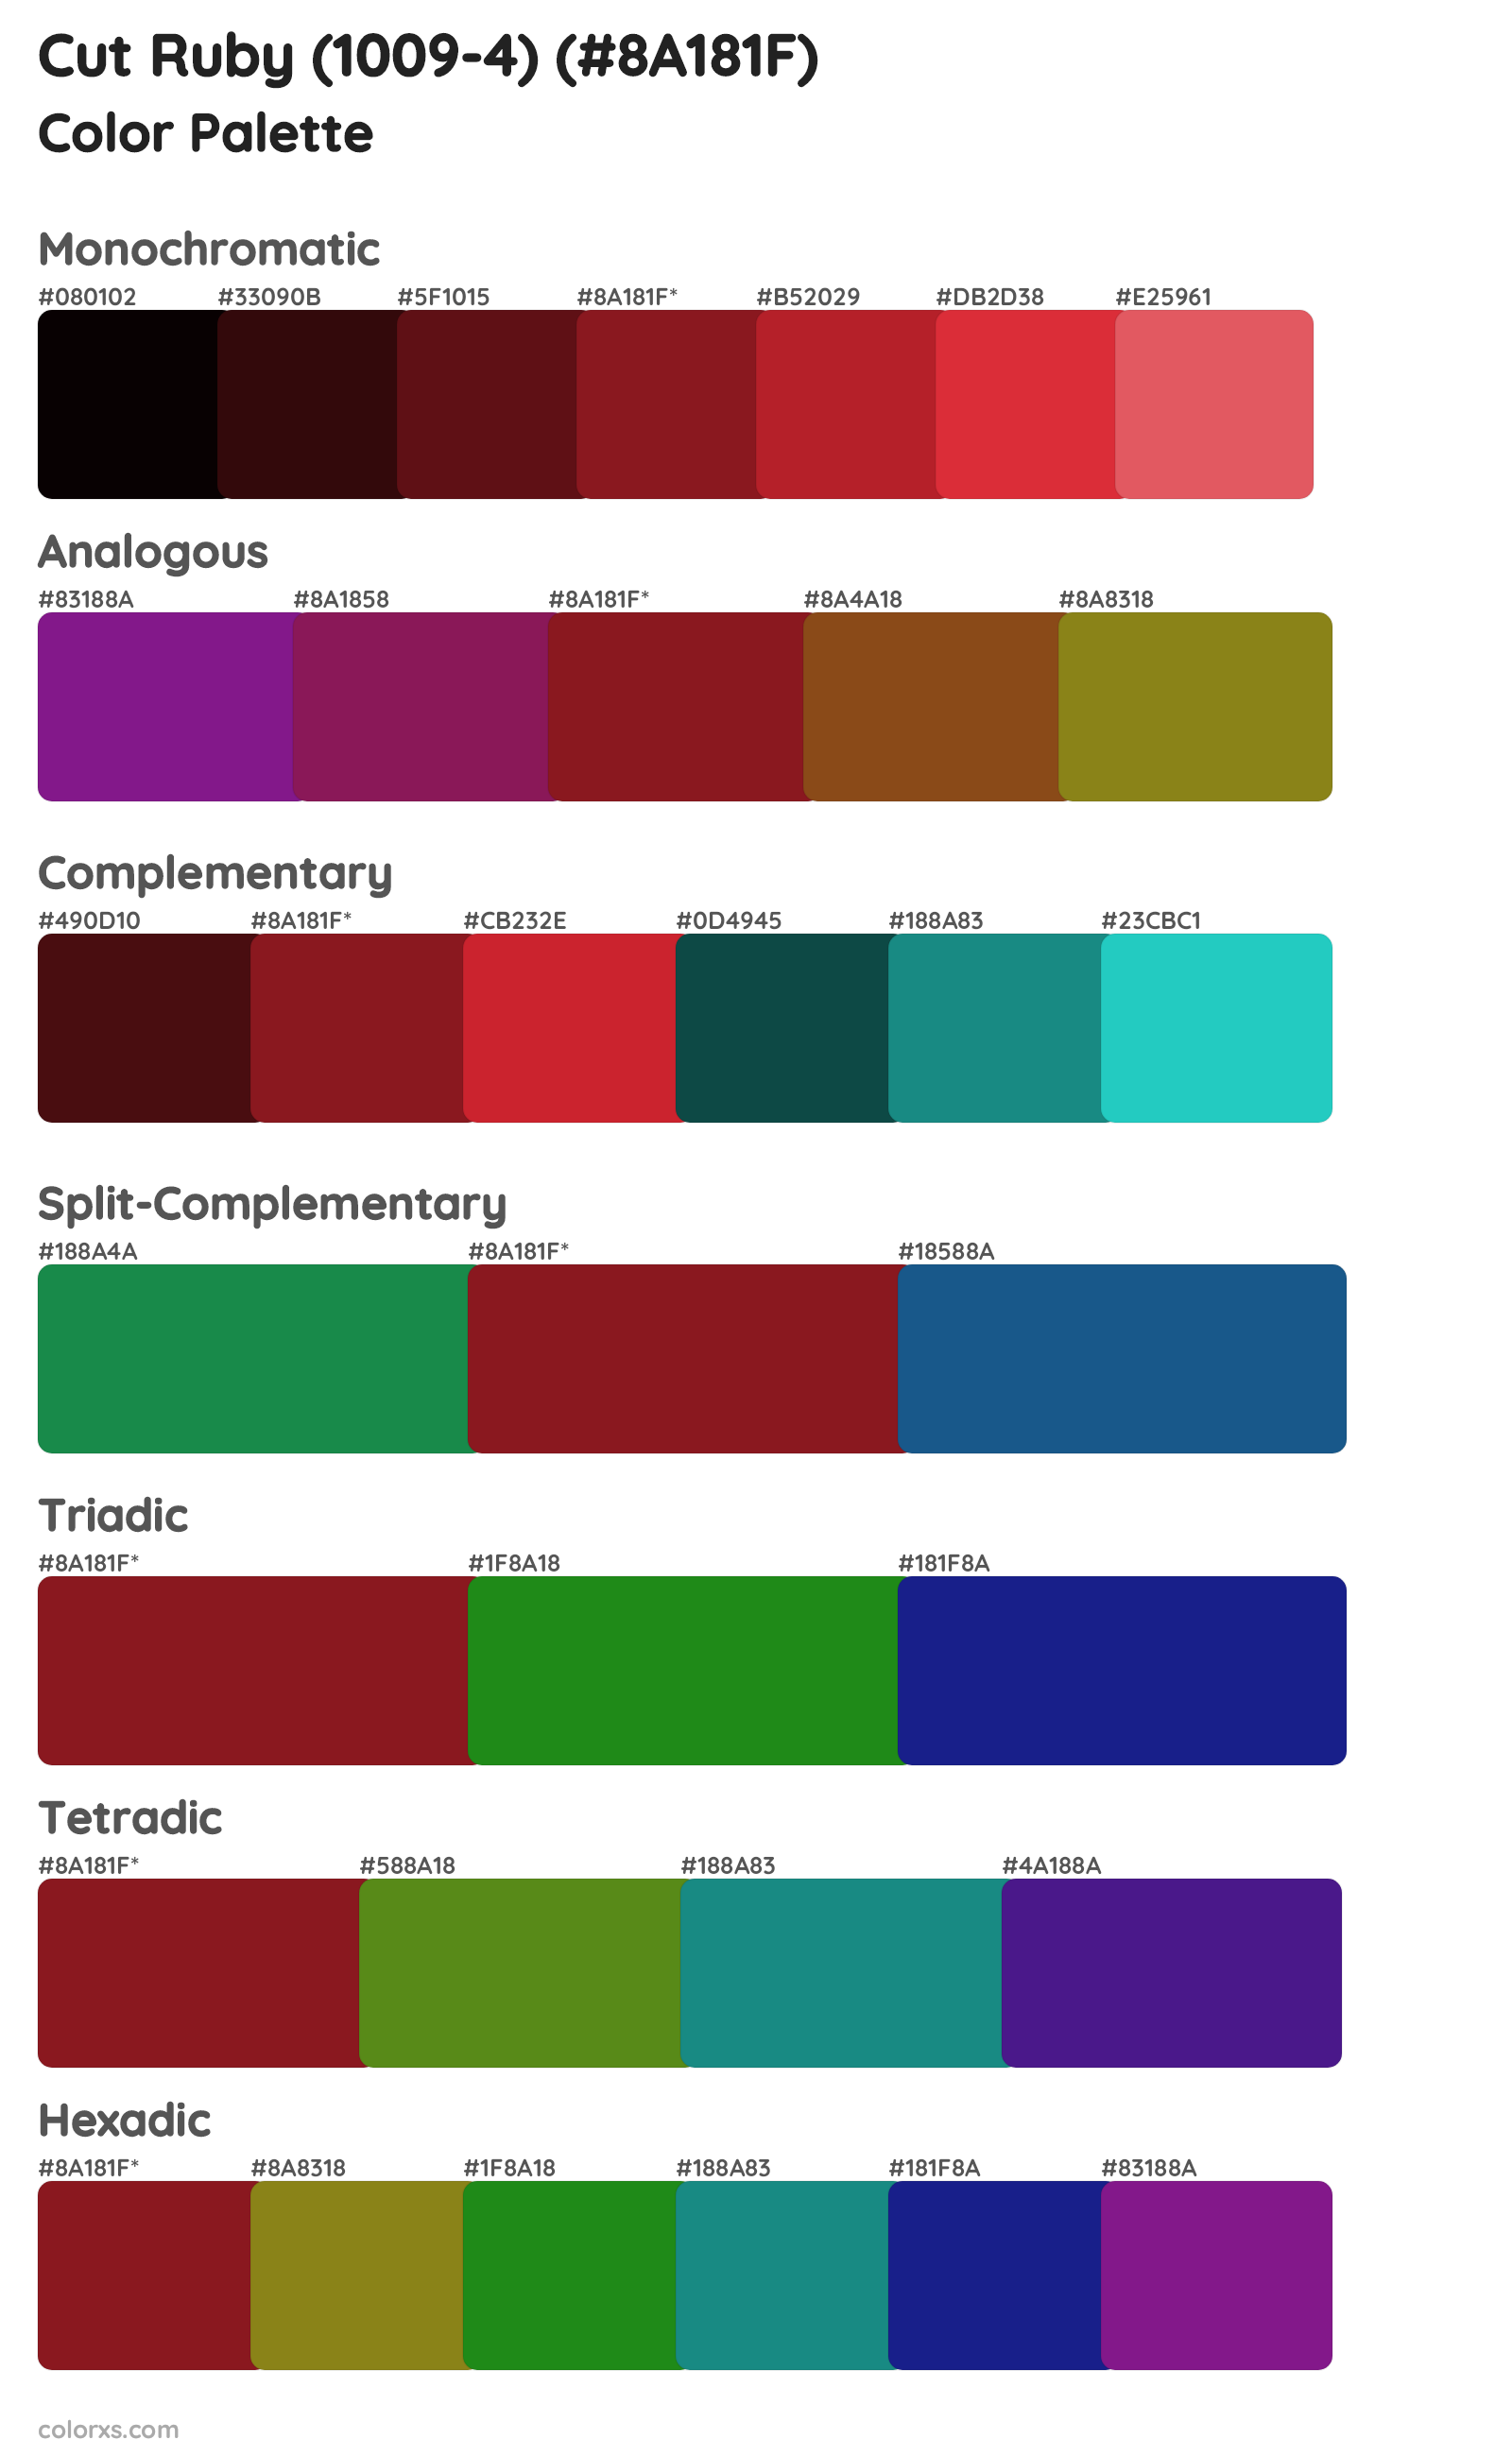 Cut Ruby (1009-4) Color Scheme Palettes